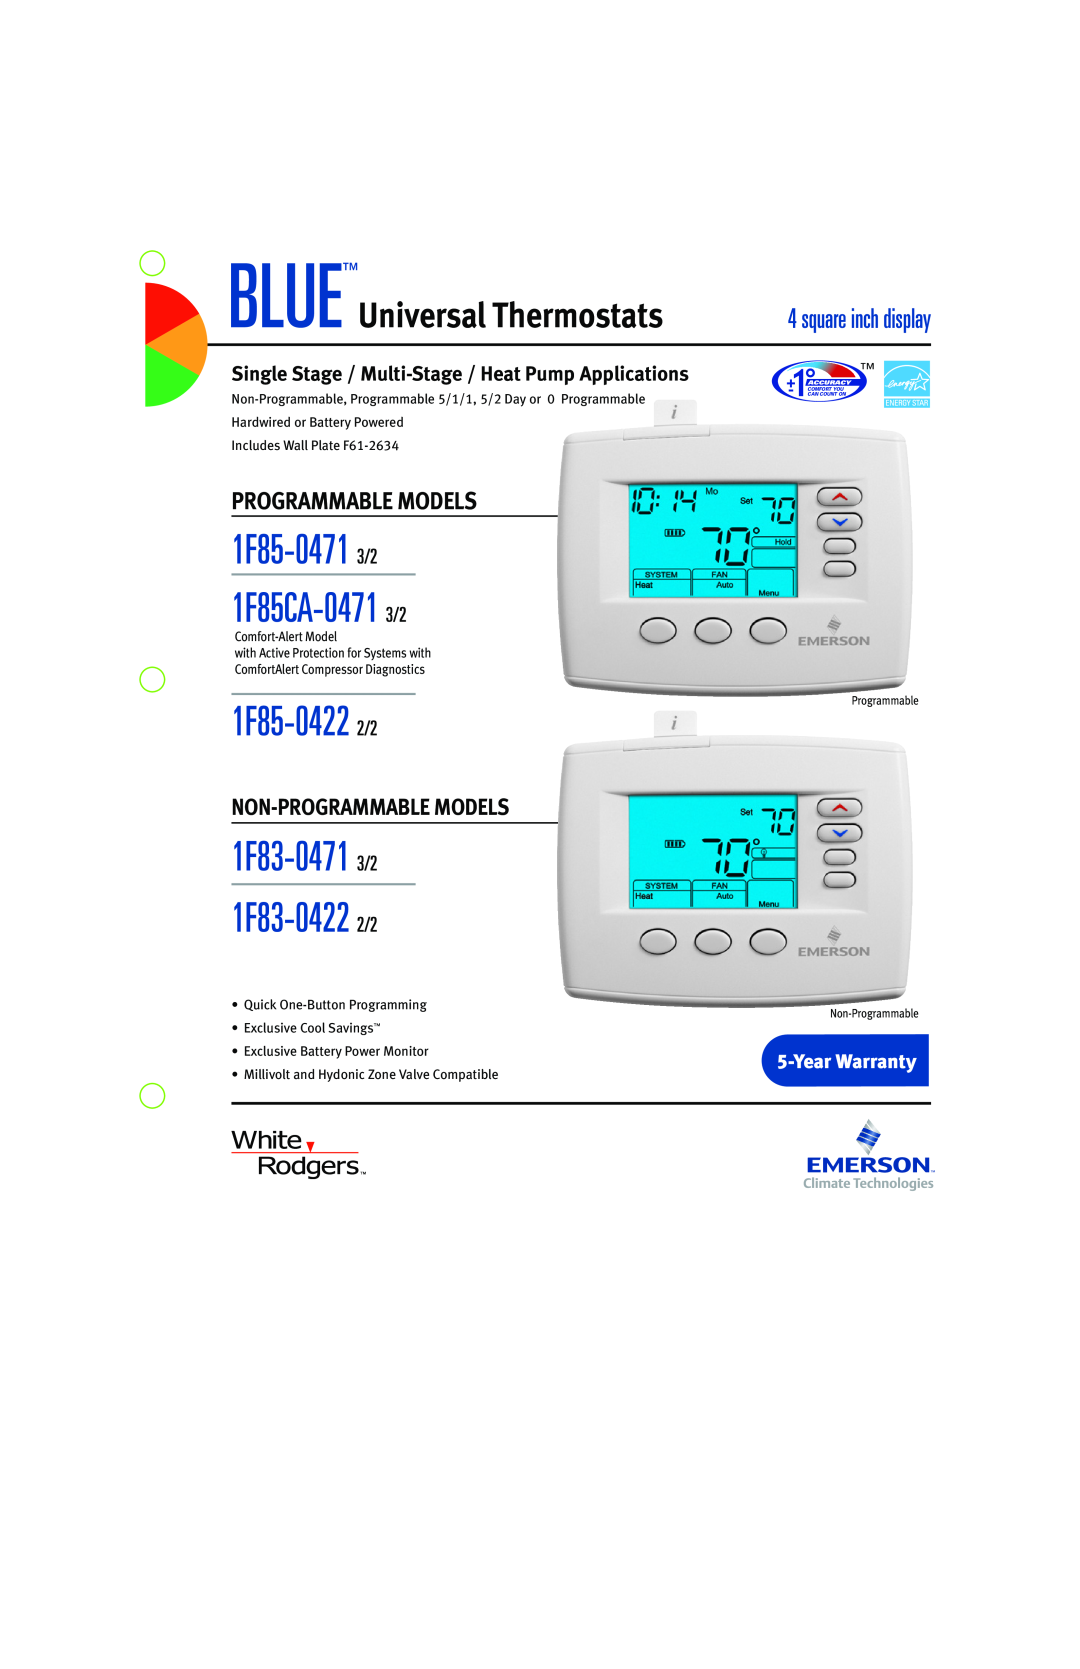 Emerson warranty 1F85-0471 3/2 1F85CA-0471 3/2, 1F85-0422 2/2, 1F83-0471 3/2 1F83-0422 2/2, BLUEUniversal Thermostats 